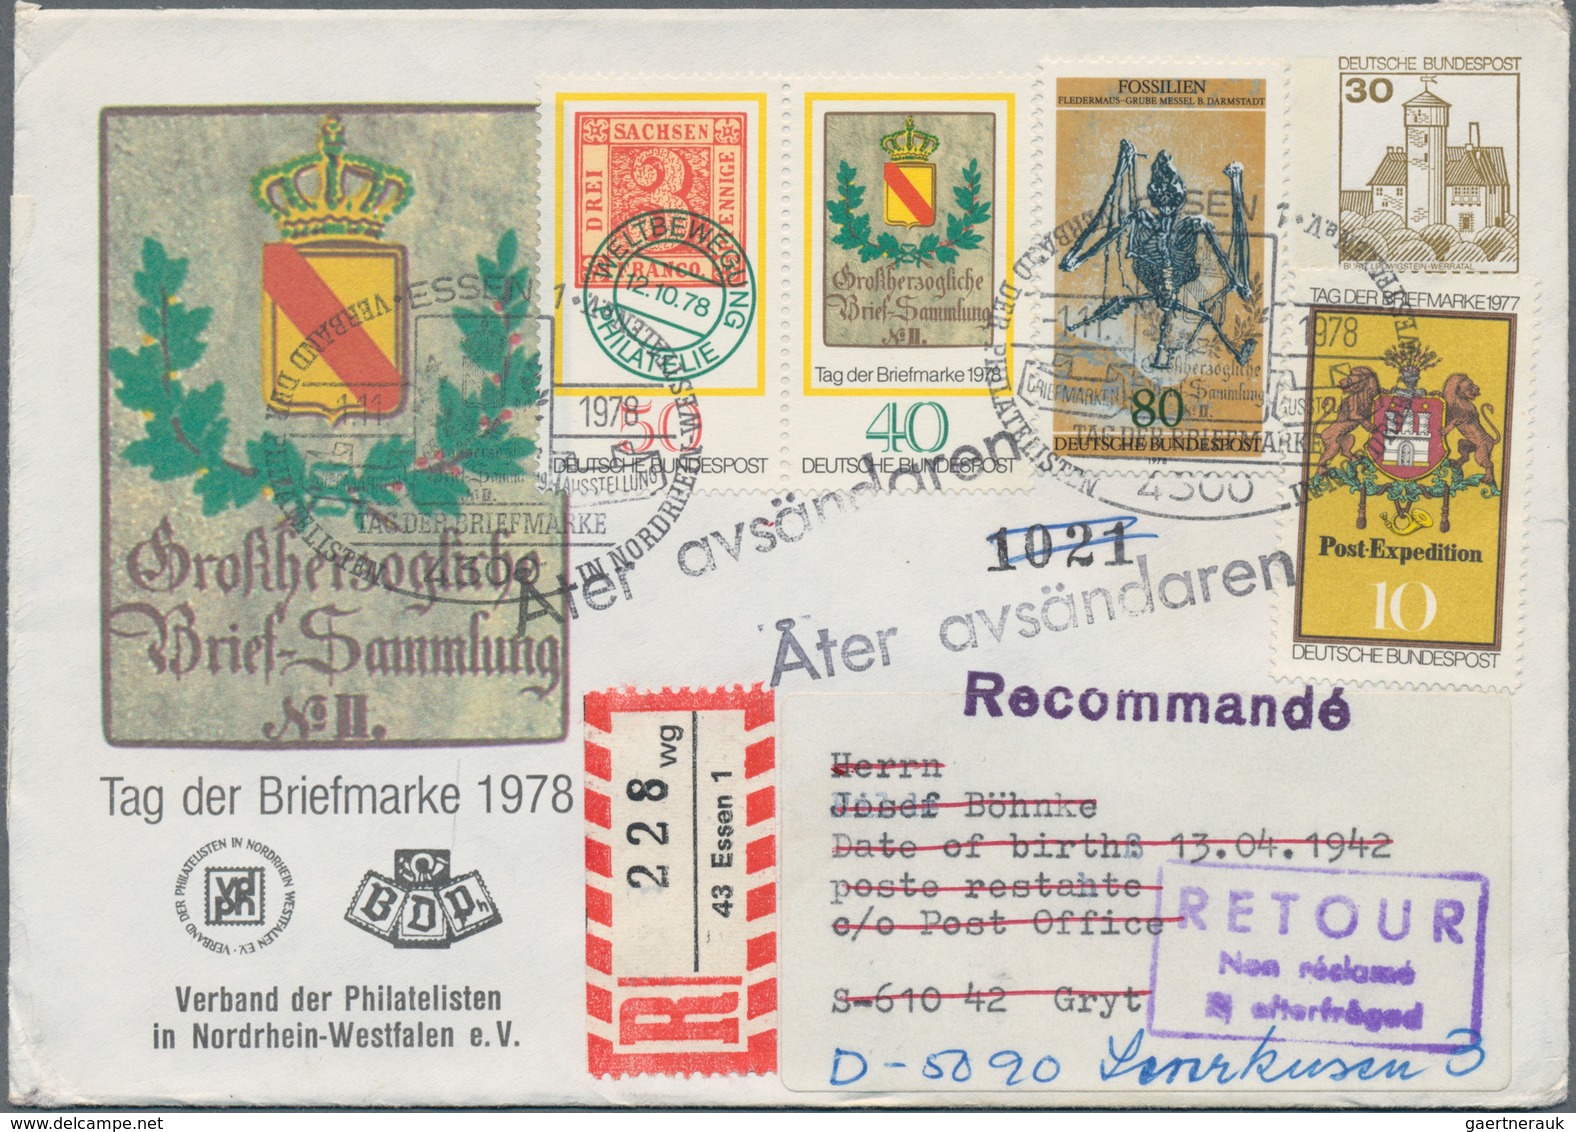 Bundesrepublik Deutschland: 1969/1979, vielseitiger Bestand von ca. 660 Briefen mit attraktiven Fran